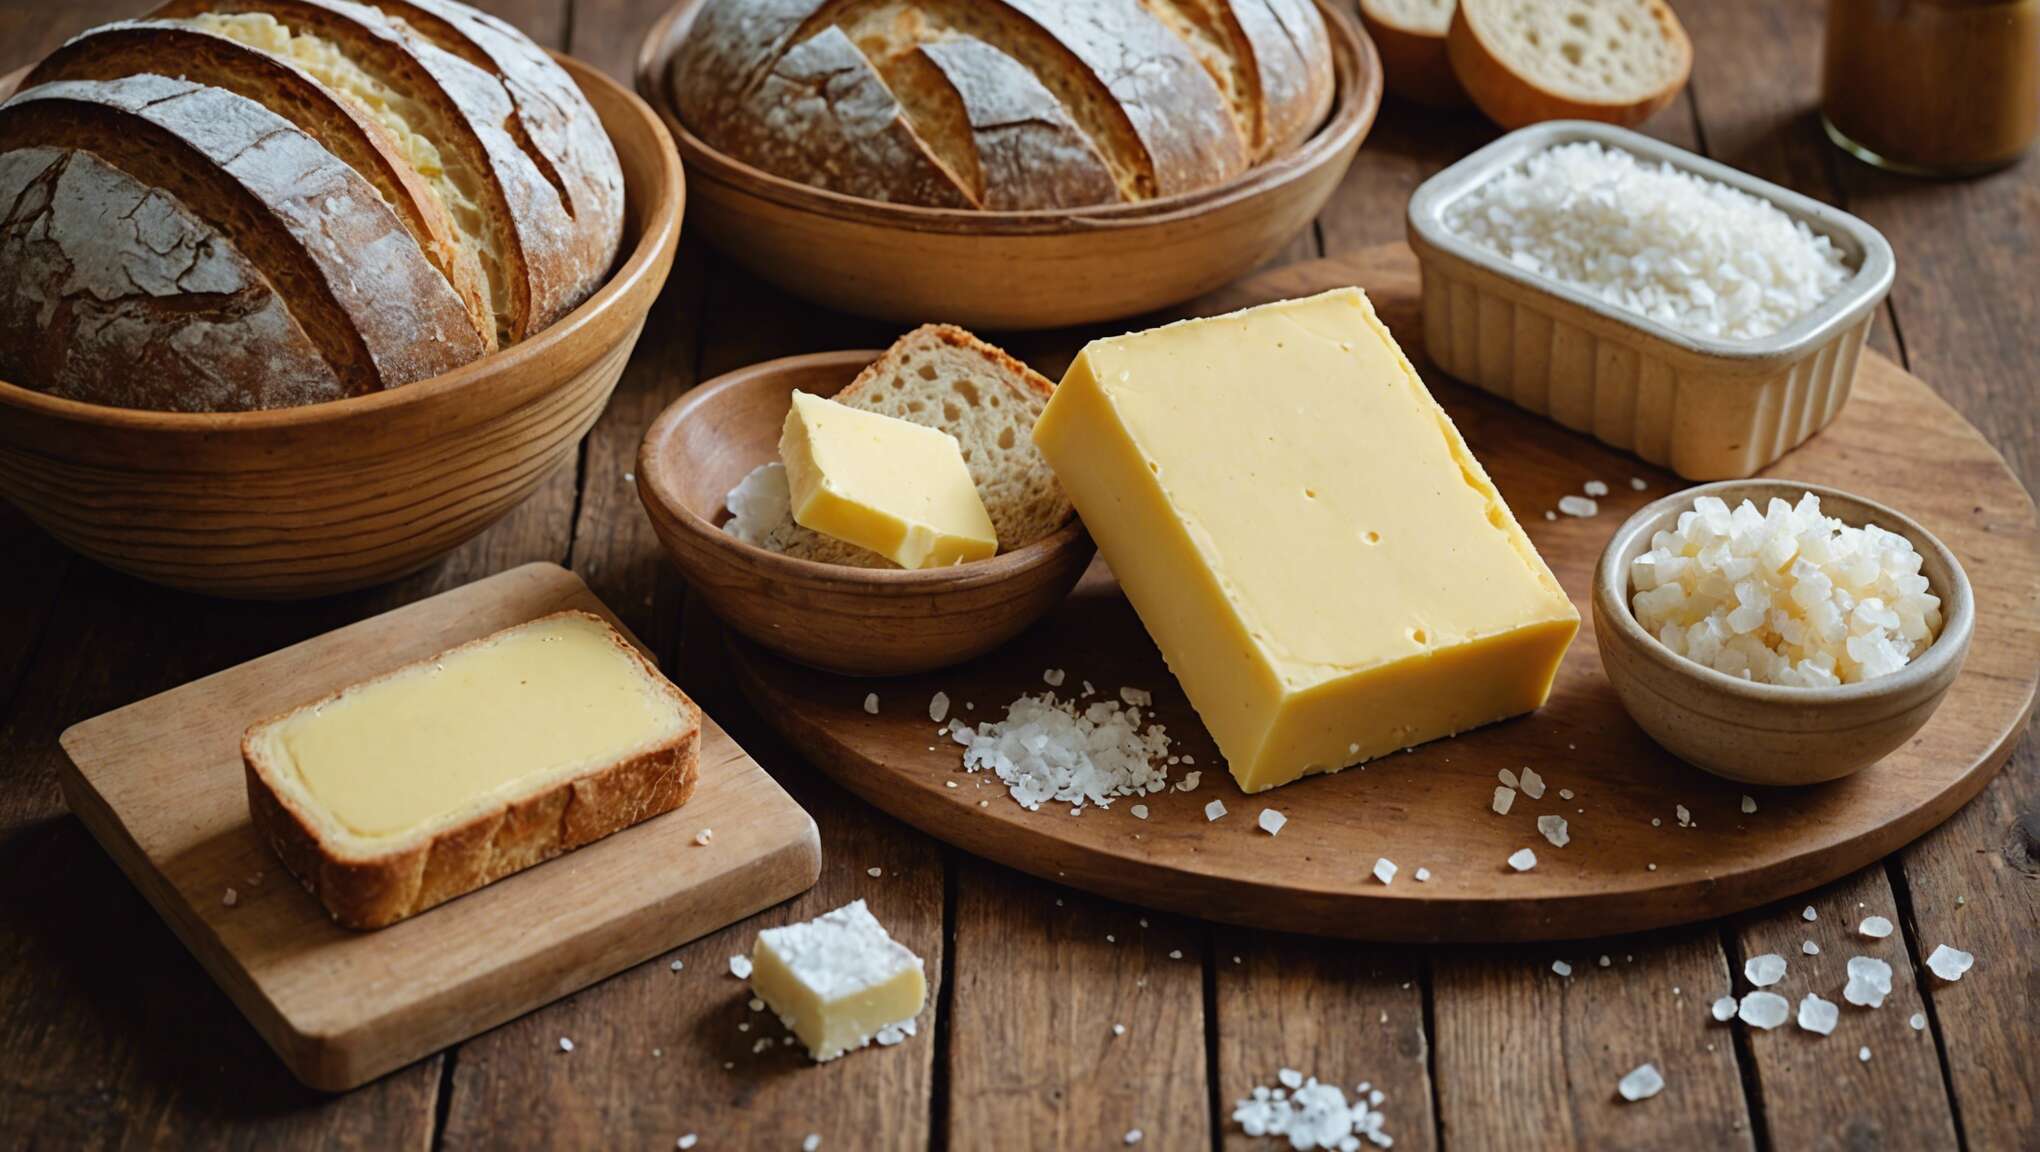 Dégustation et distinctions : les différents types de beurre en bretagne